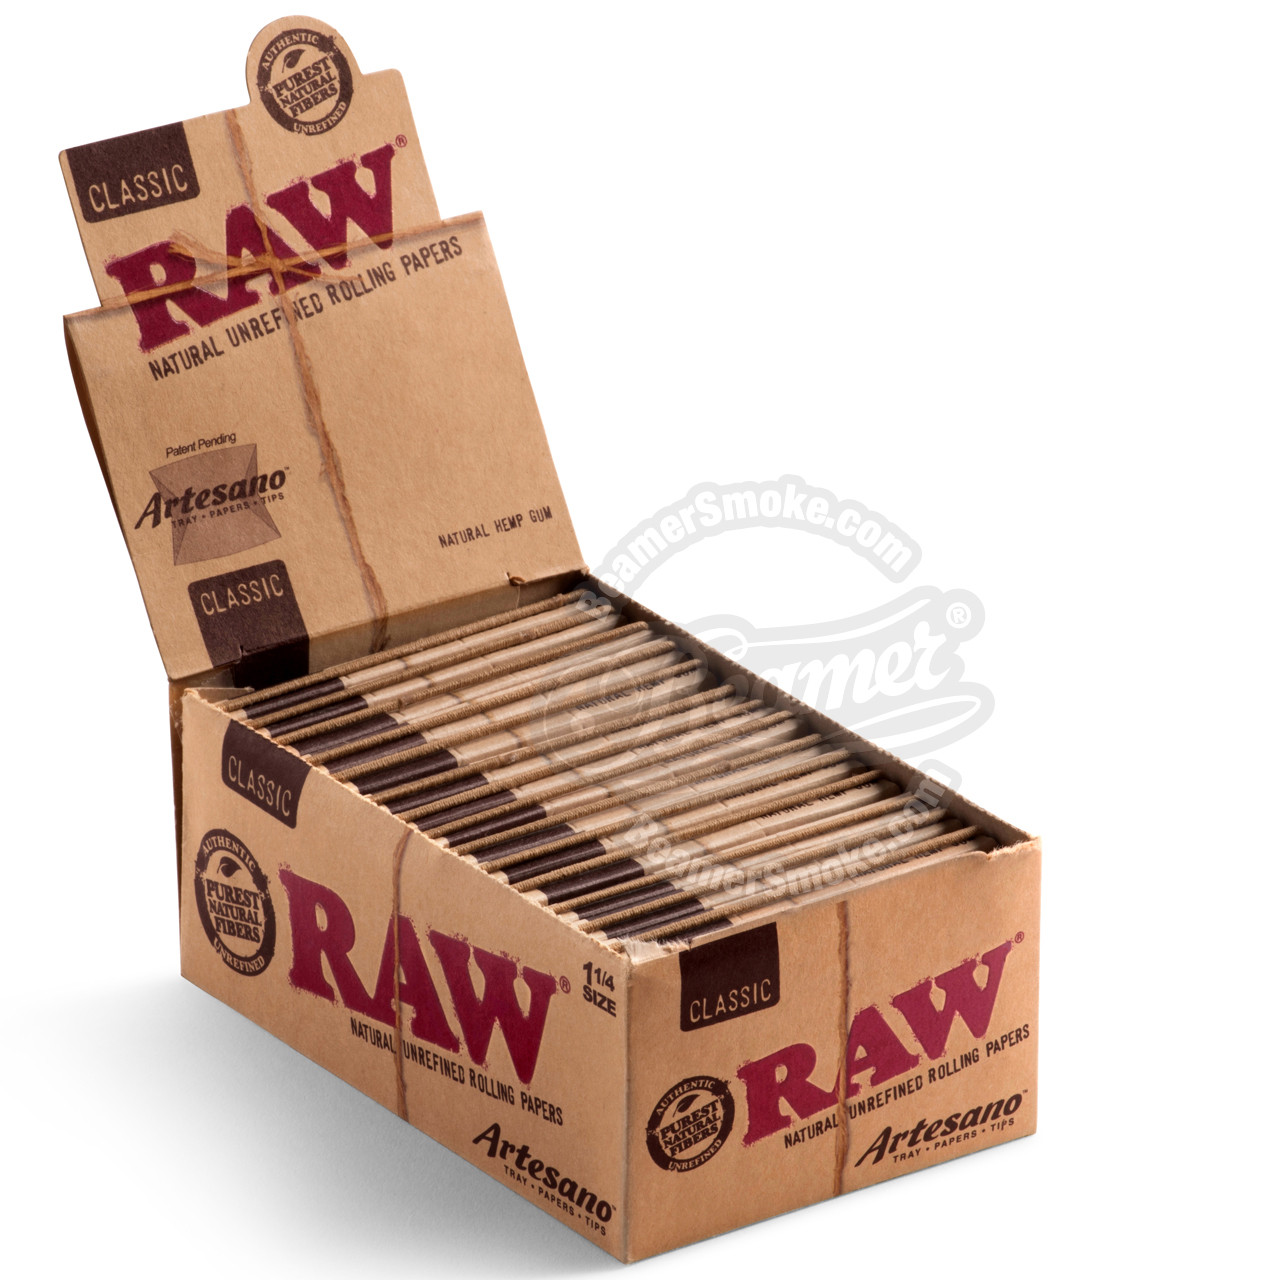 RAW Organic Hemp 1 1/4 Artesano-Fold Out Tray + Tips — TBS Supply Co